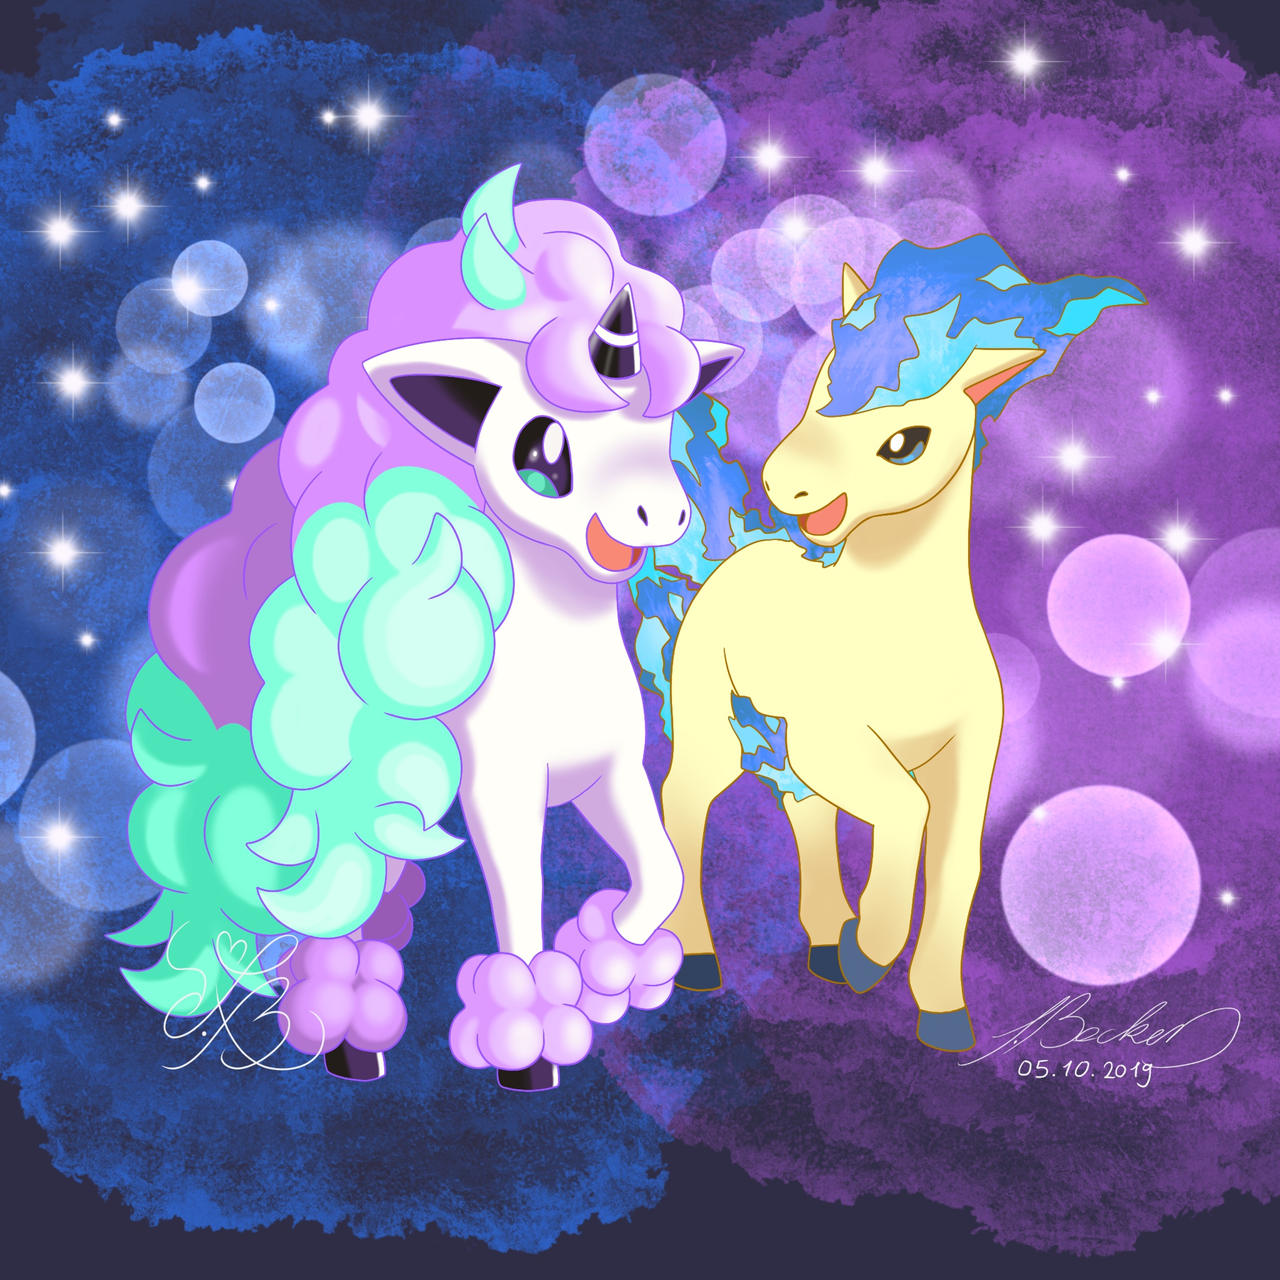 Galarian Ponyta and Shiny Ponyta by MyHandsAreCrazy on DeviantArt